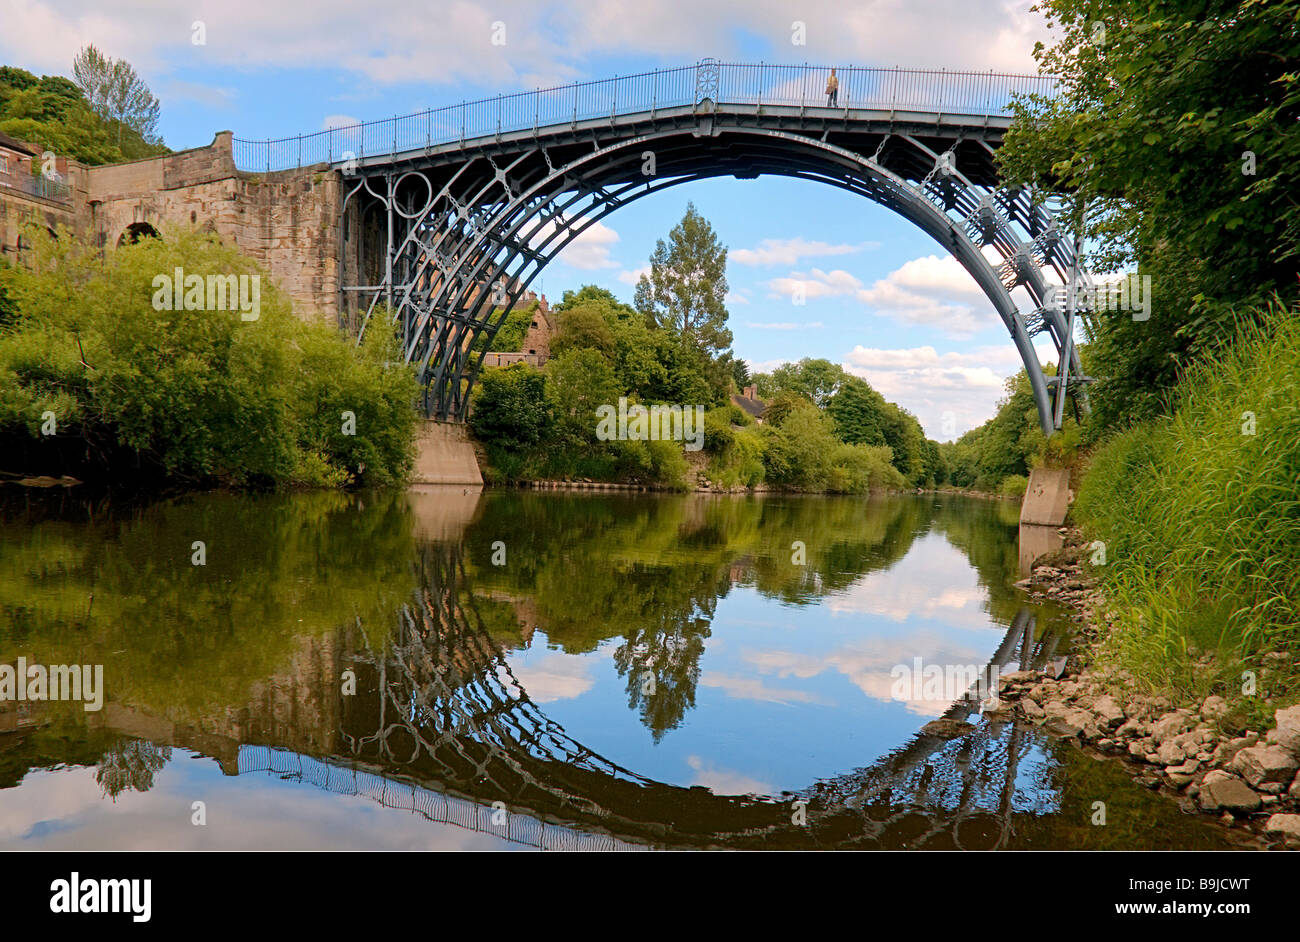 Ironbridge, die Überquerung des Flusses Severn, zuerst Eisen Brücke weltweit, von Abraham Darby erbaut 1779 in Telford, Shropshire, Engl Stockfoto